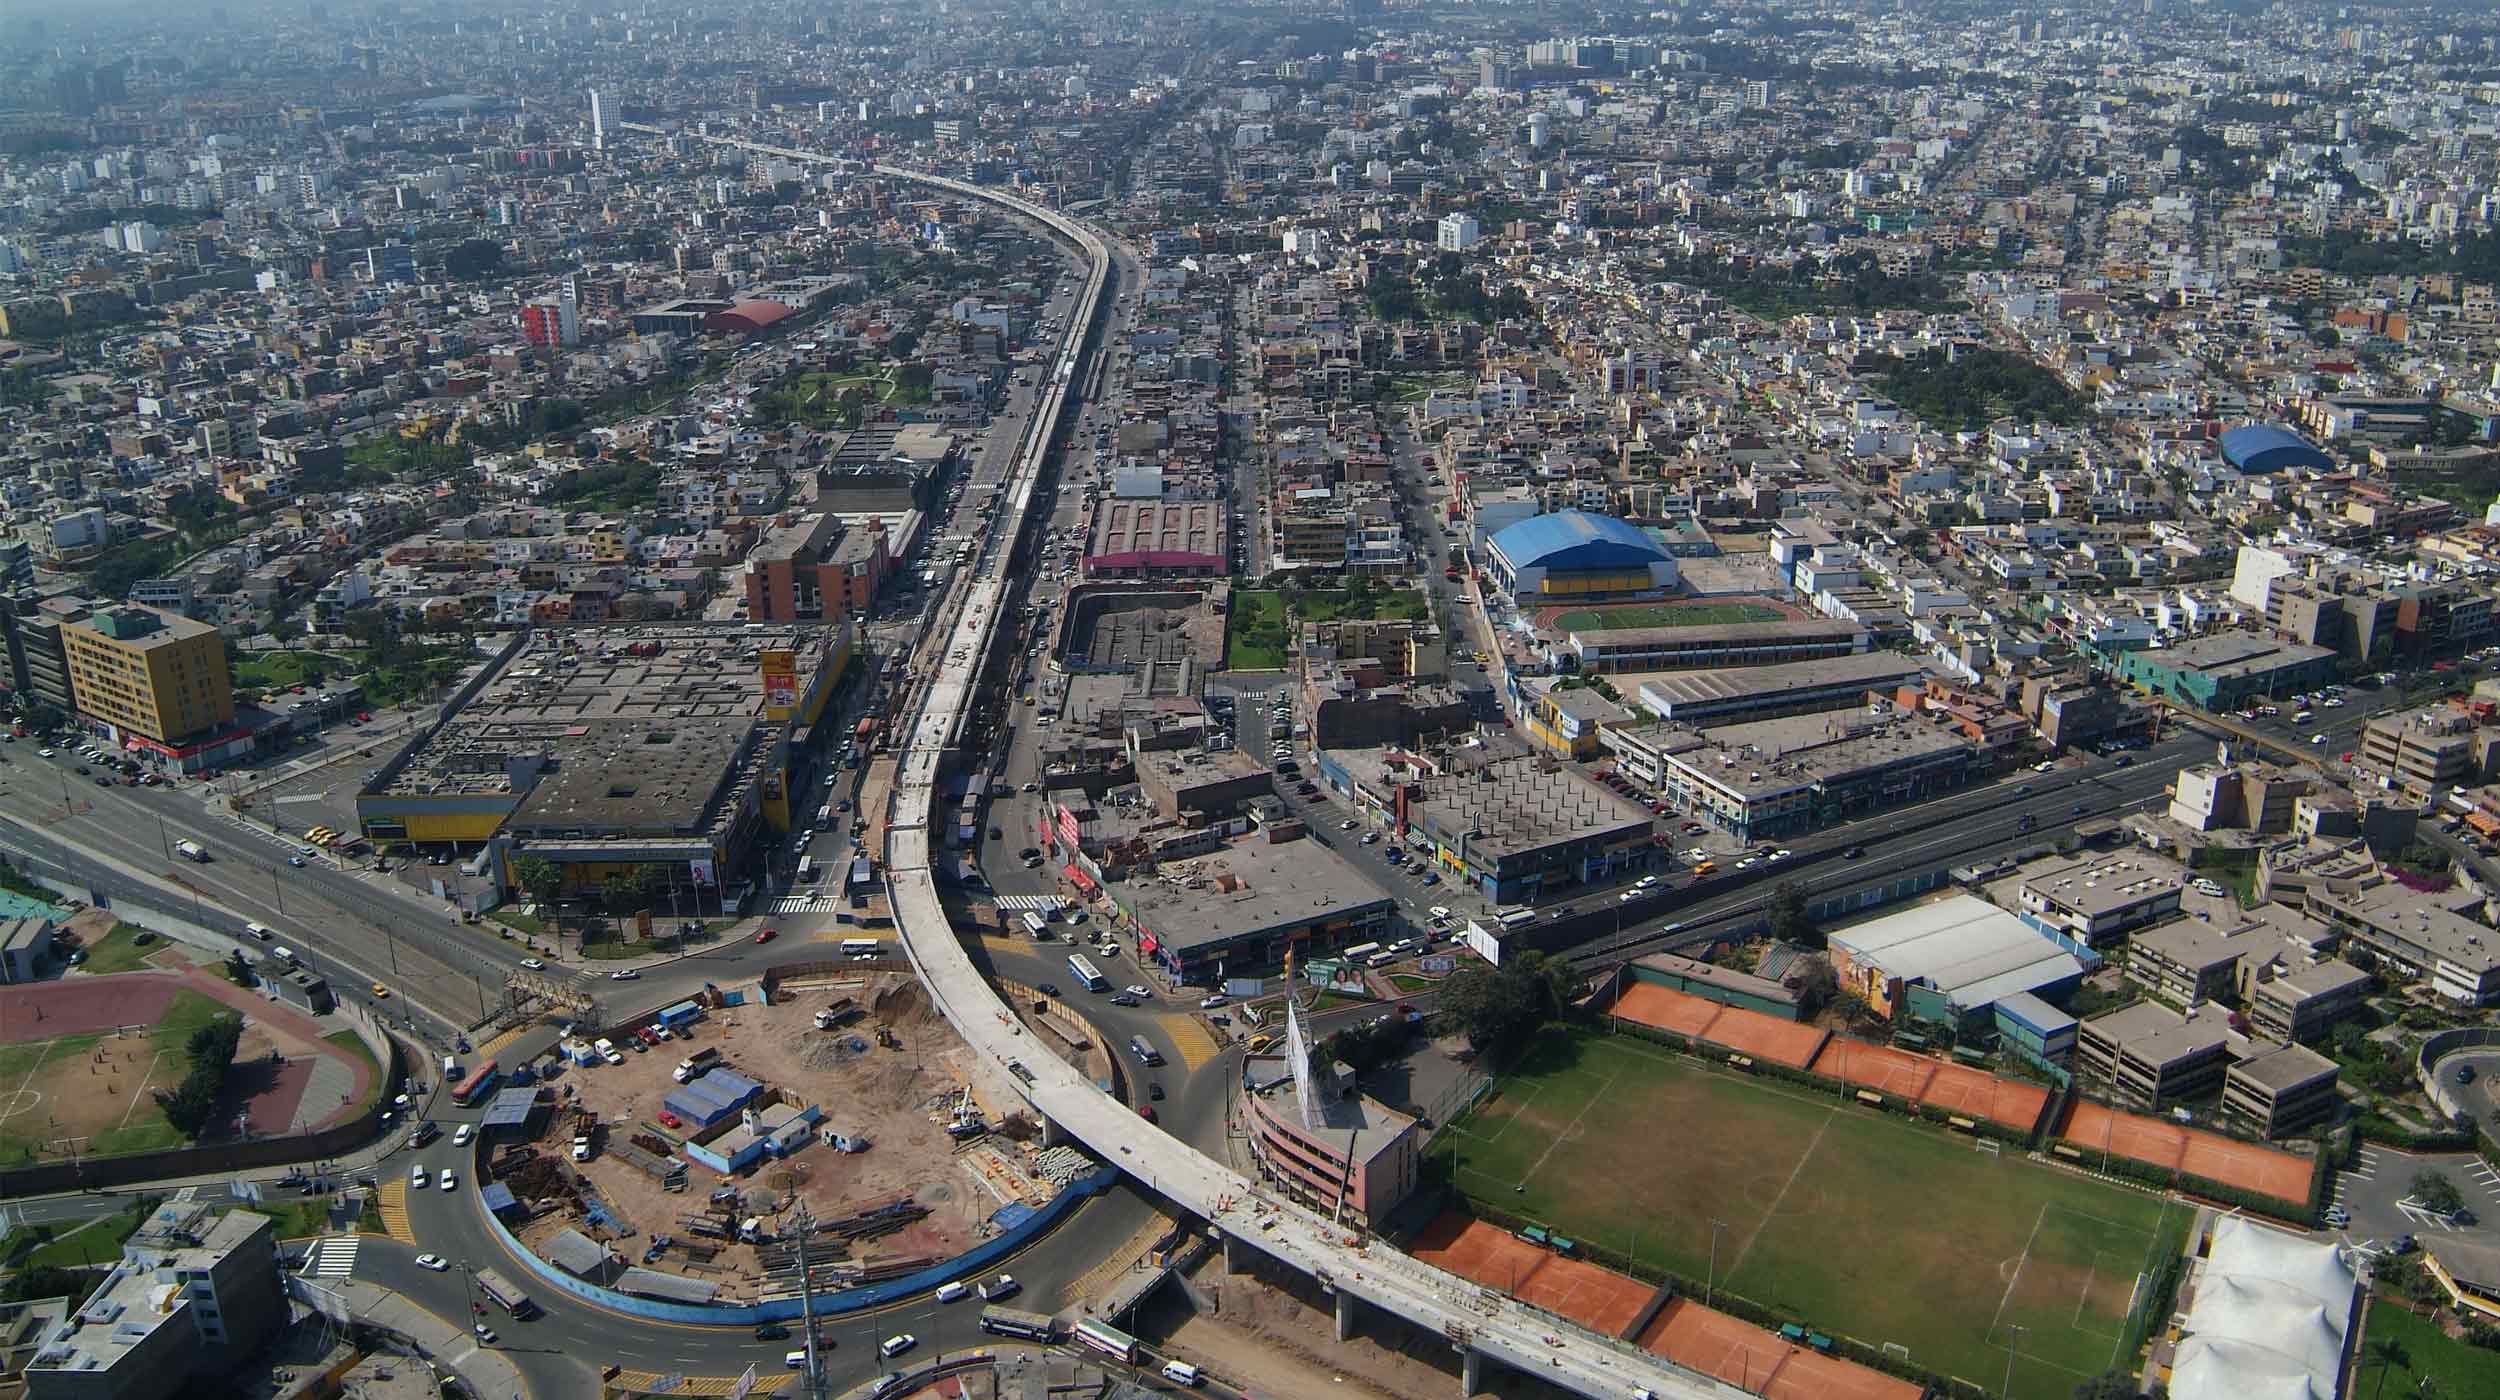 Localizado na cidade de Lima, este projeto emblemático consiste na construção de um viaduto elevado de 12,5 km e 8 estações.